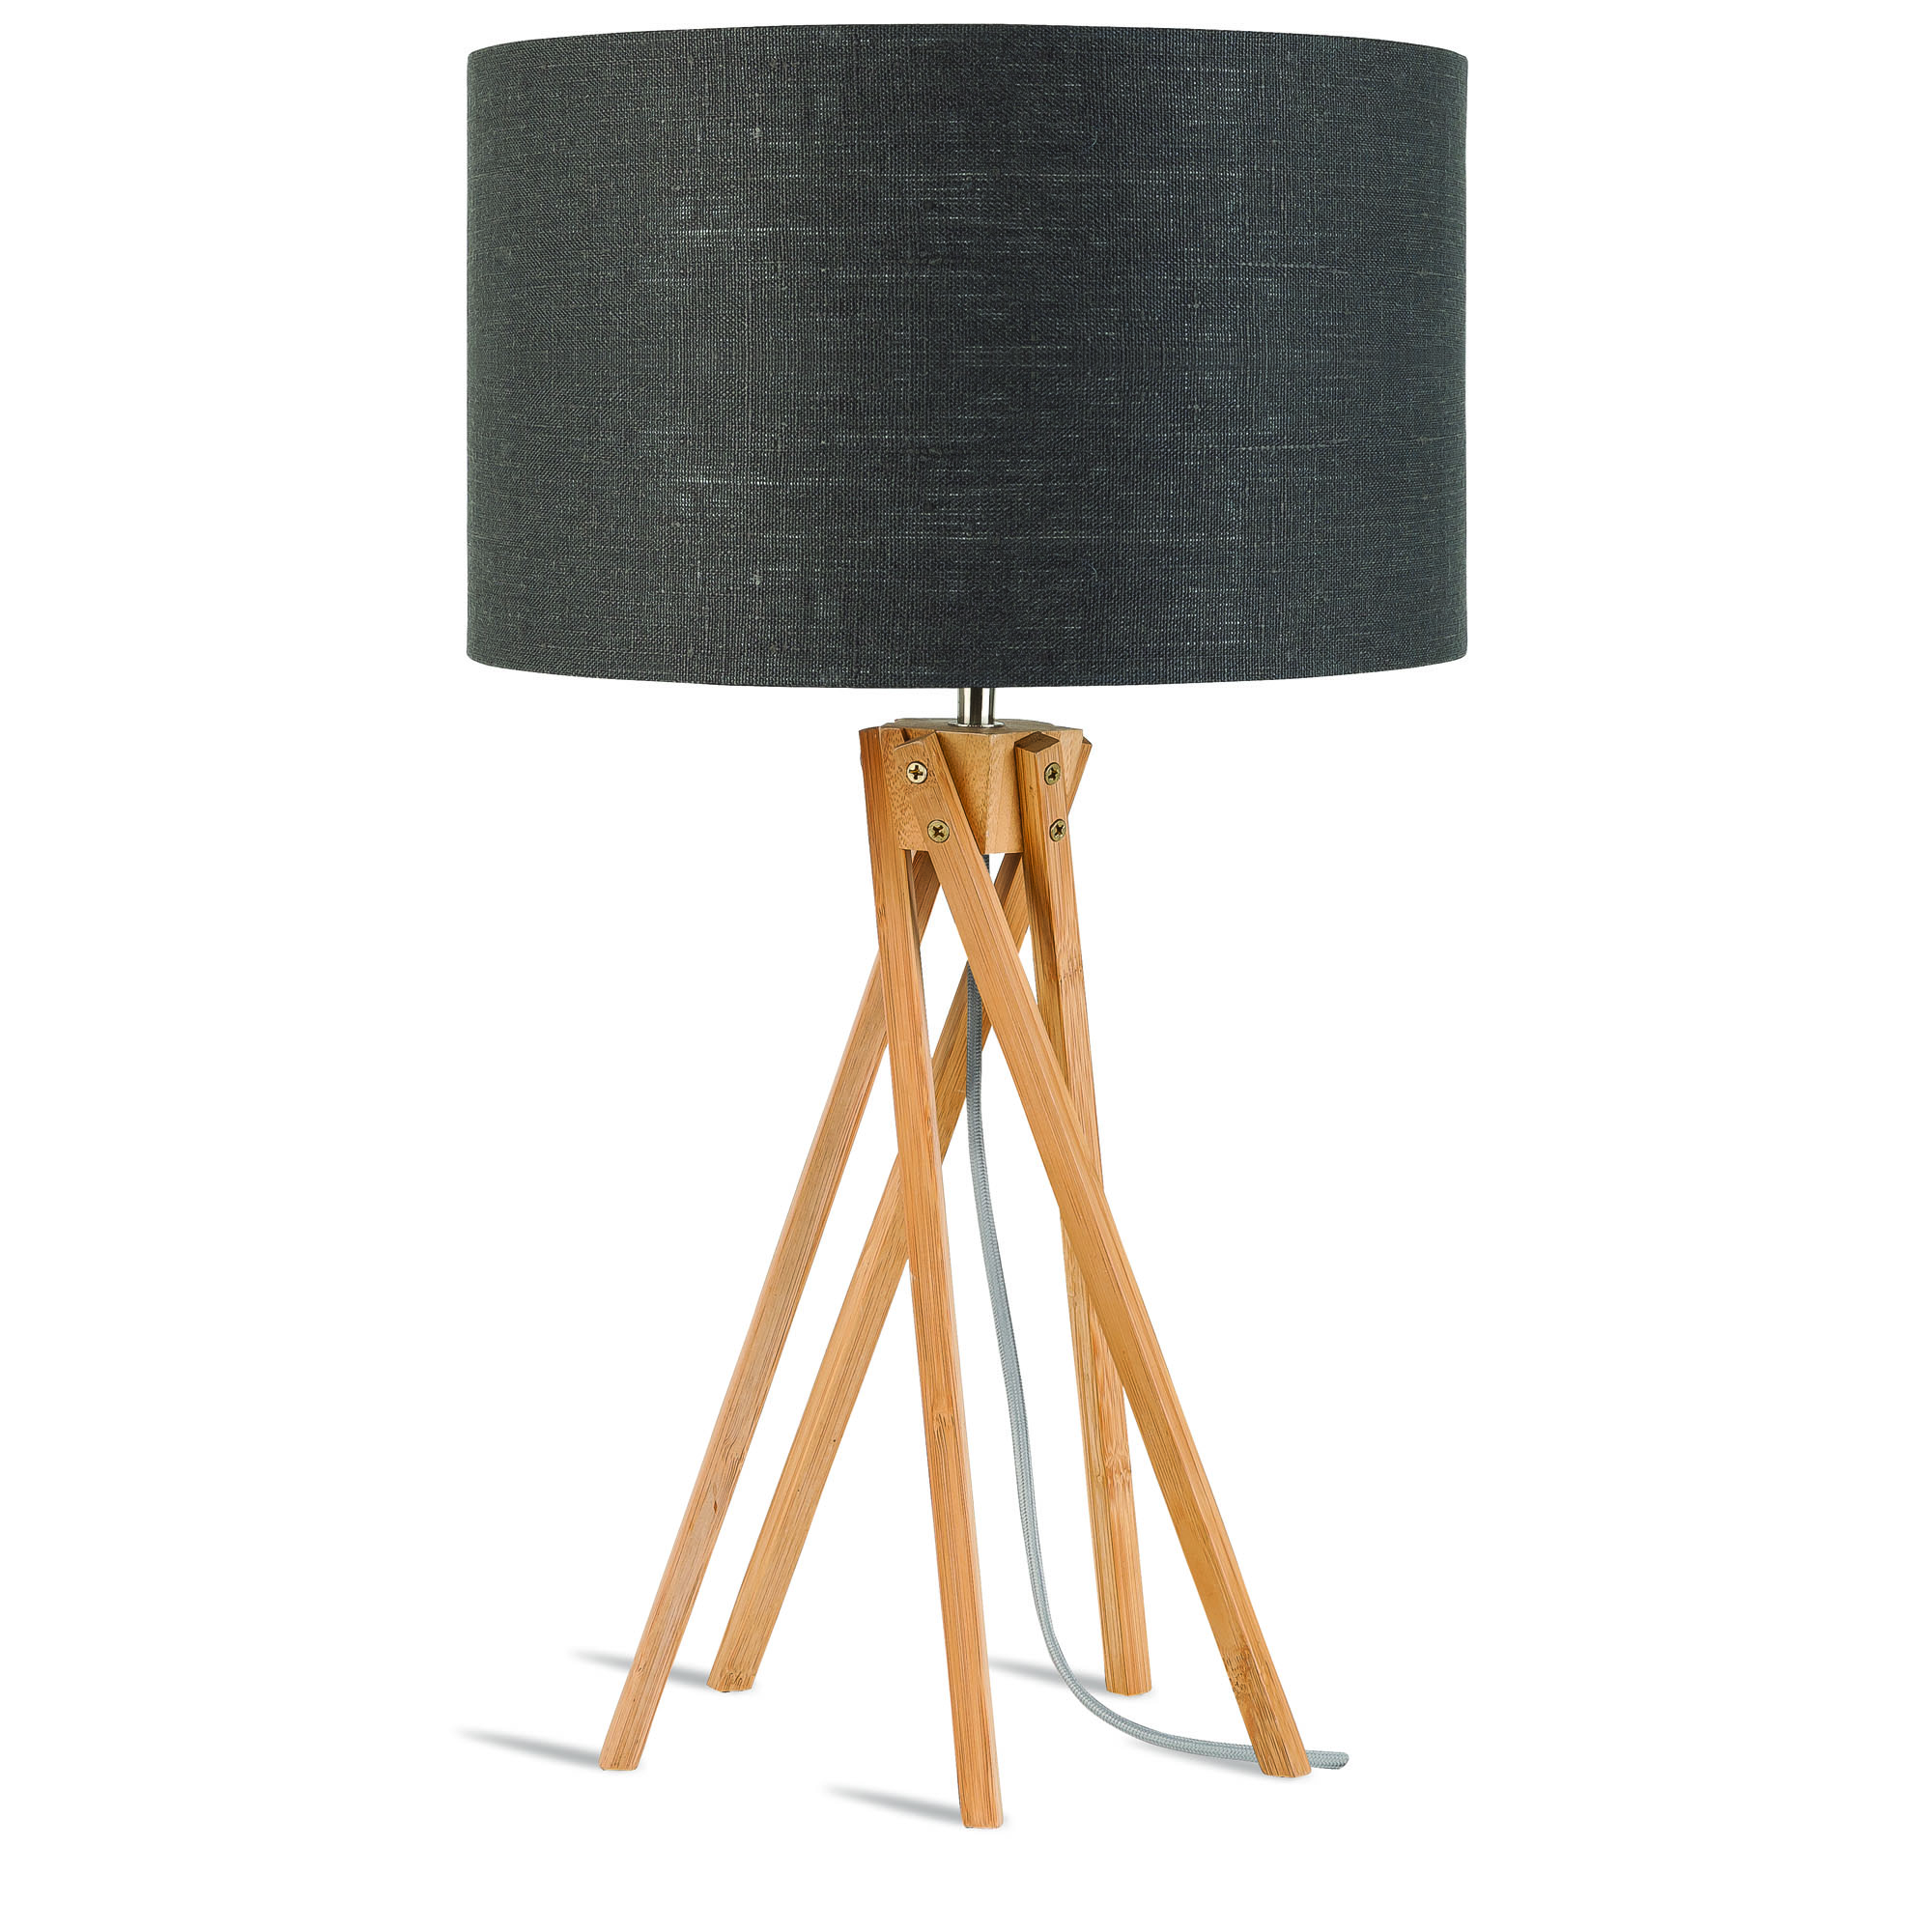 Lampe de table en bambou abat-jour en lin gris foncé, h. 59cm